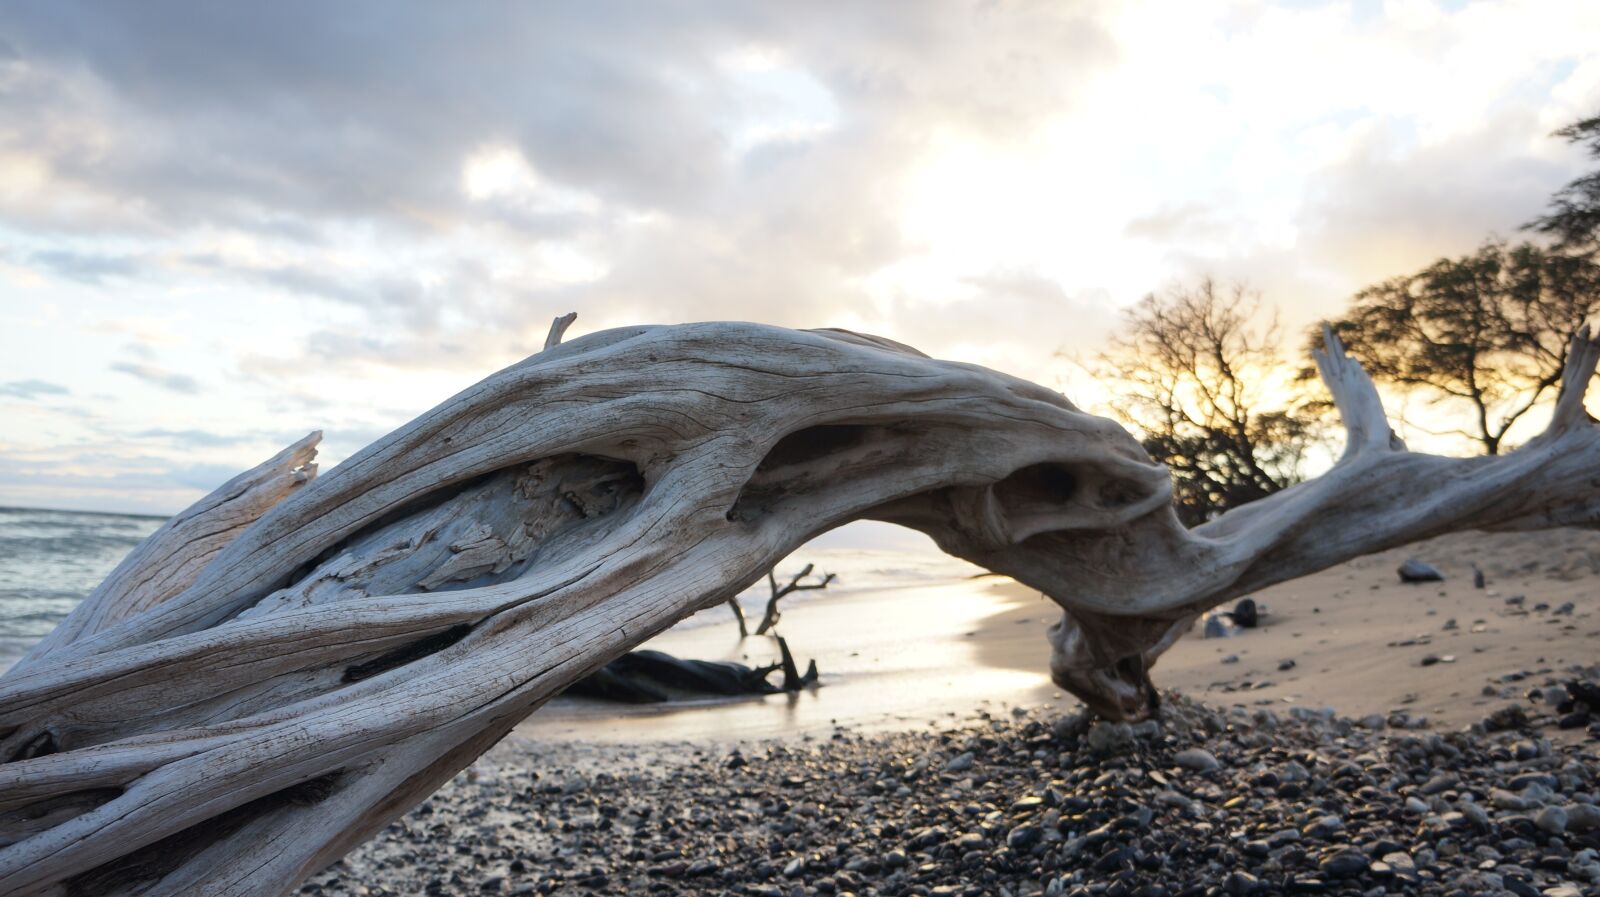 Sony Alpha NEX-5N sample photo. Beach, ocean, driftwood photography